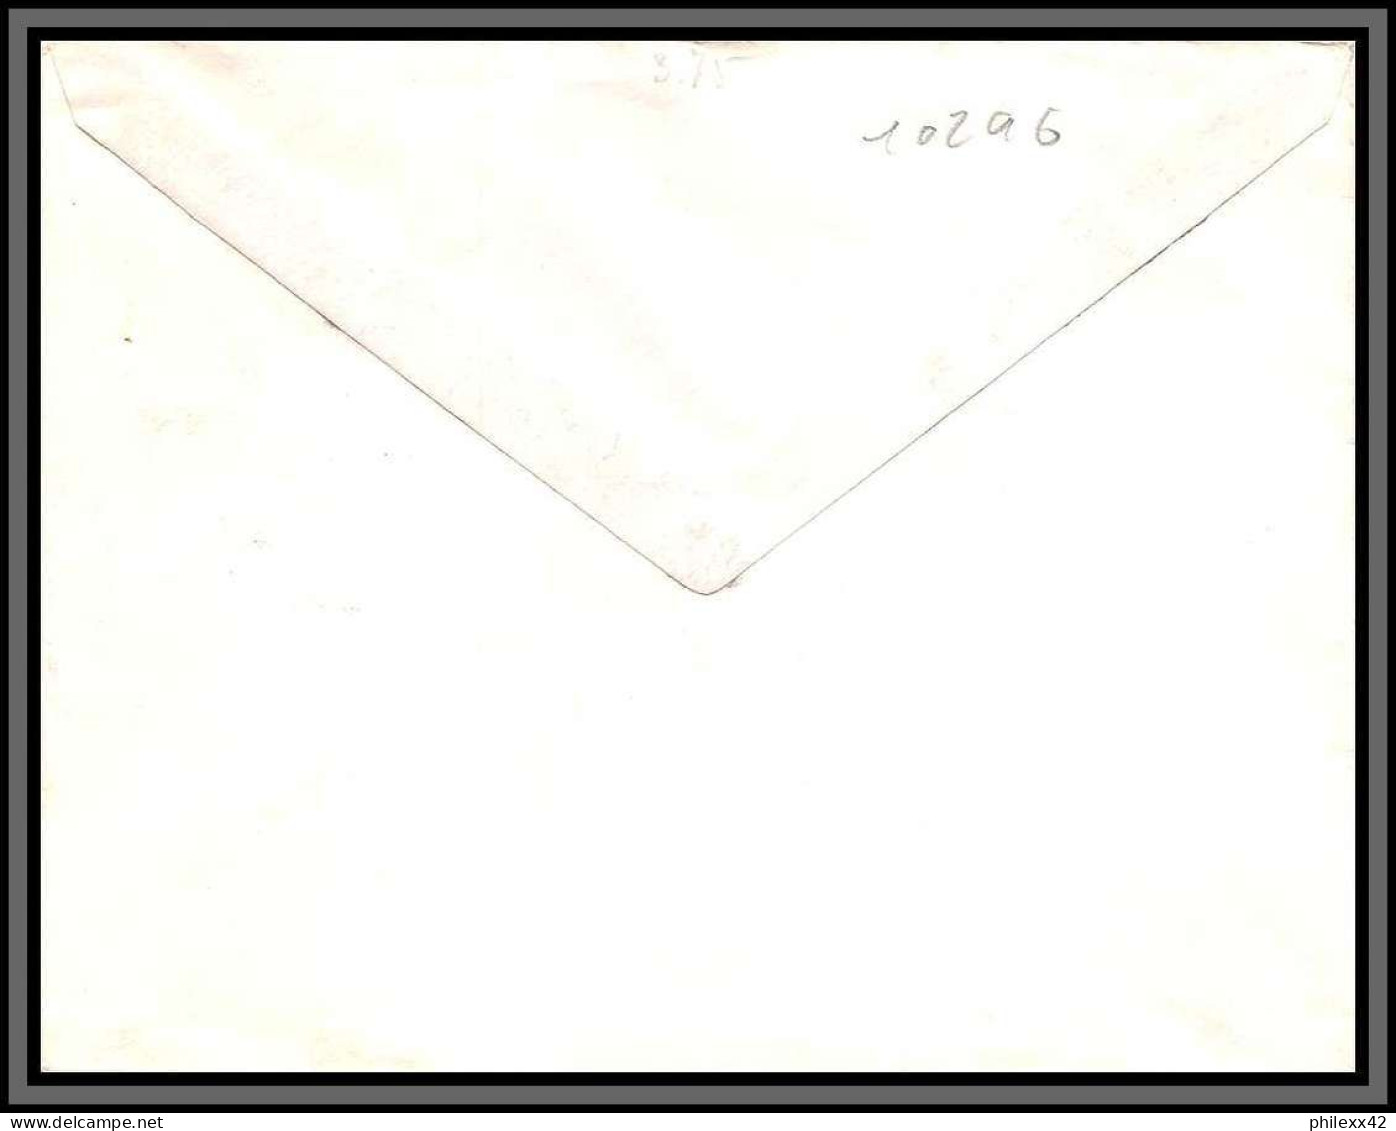 10296 PA N°67 Pecheur à L'epervier 26/1/1962 Lettre Cover Nouvelle Caledonie Aviation  - Lettres & Documents